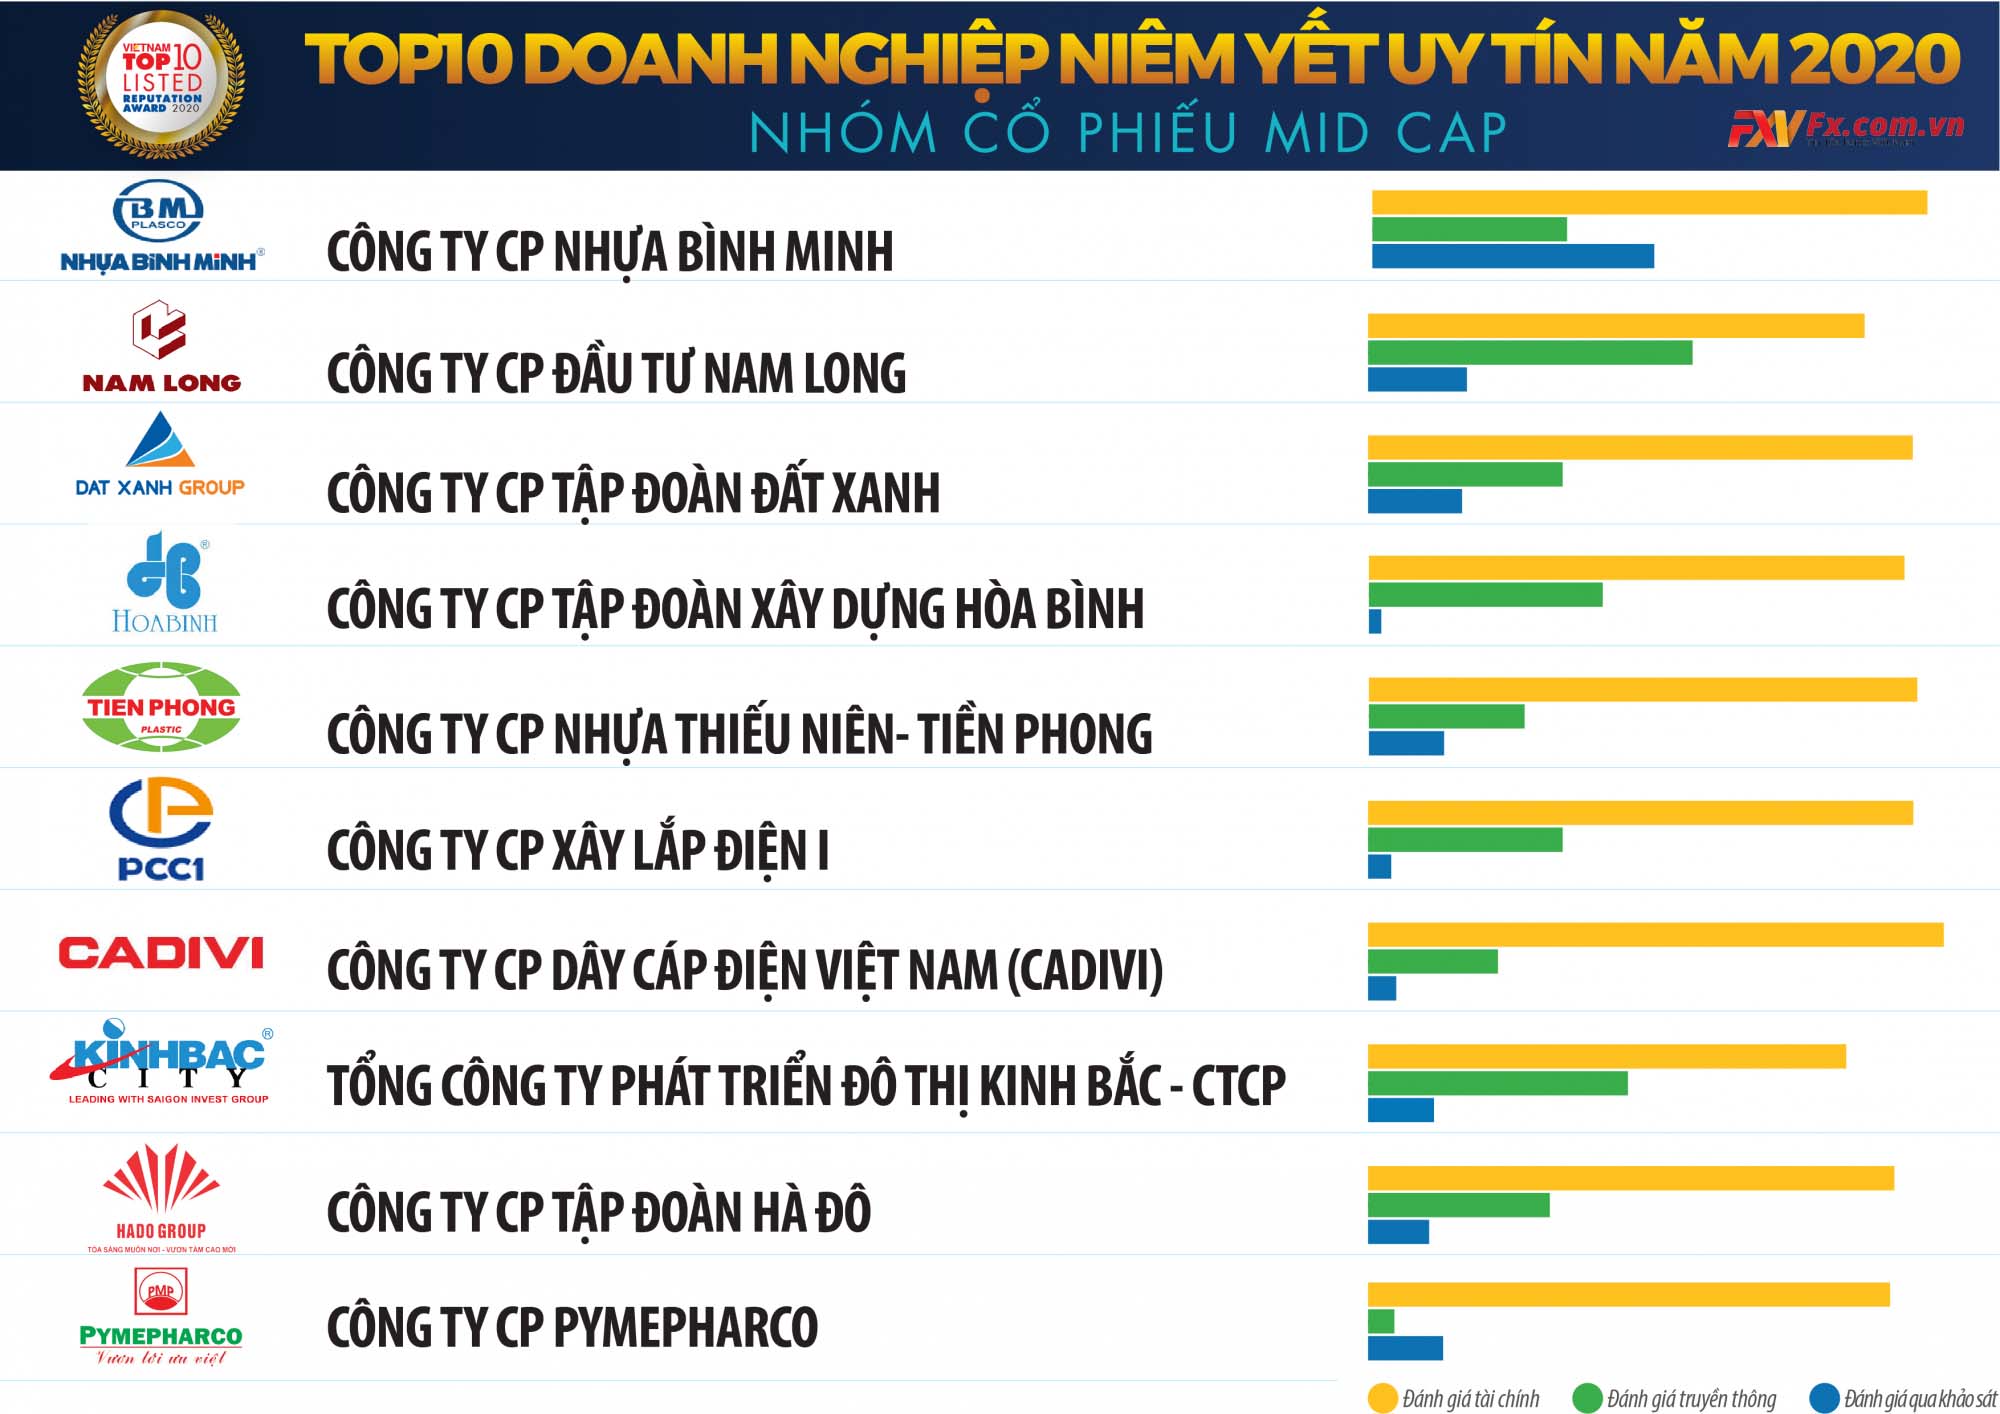 Tổng hợp danh sách các mã cổ phiếu Midcap tại Việt Nam